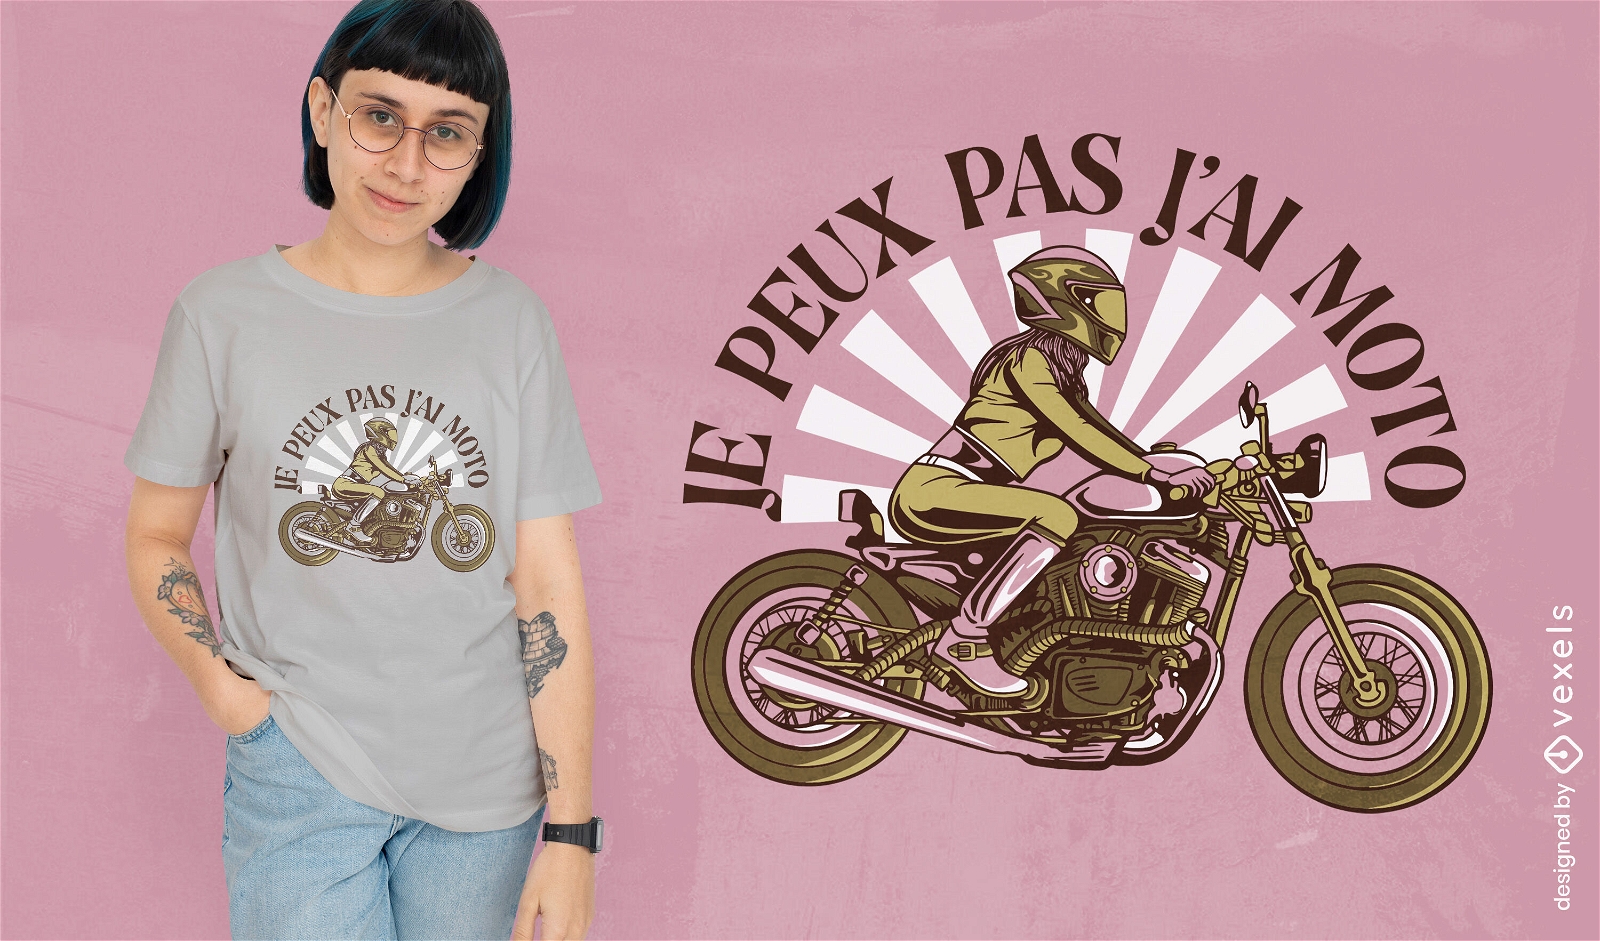 Dise?o de camiseta francesa de motocicleta vintage.